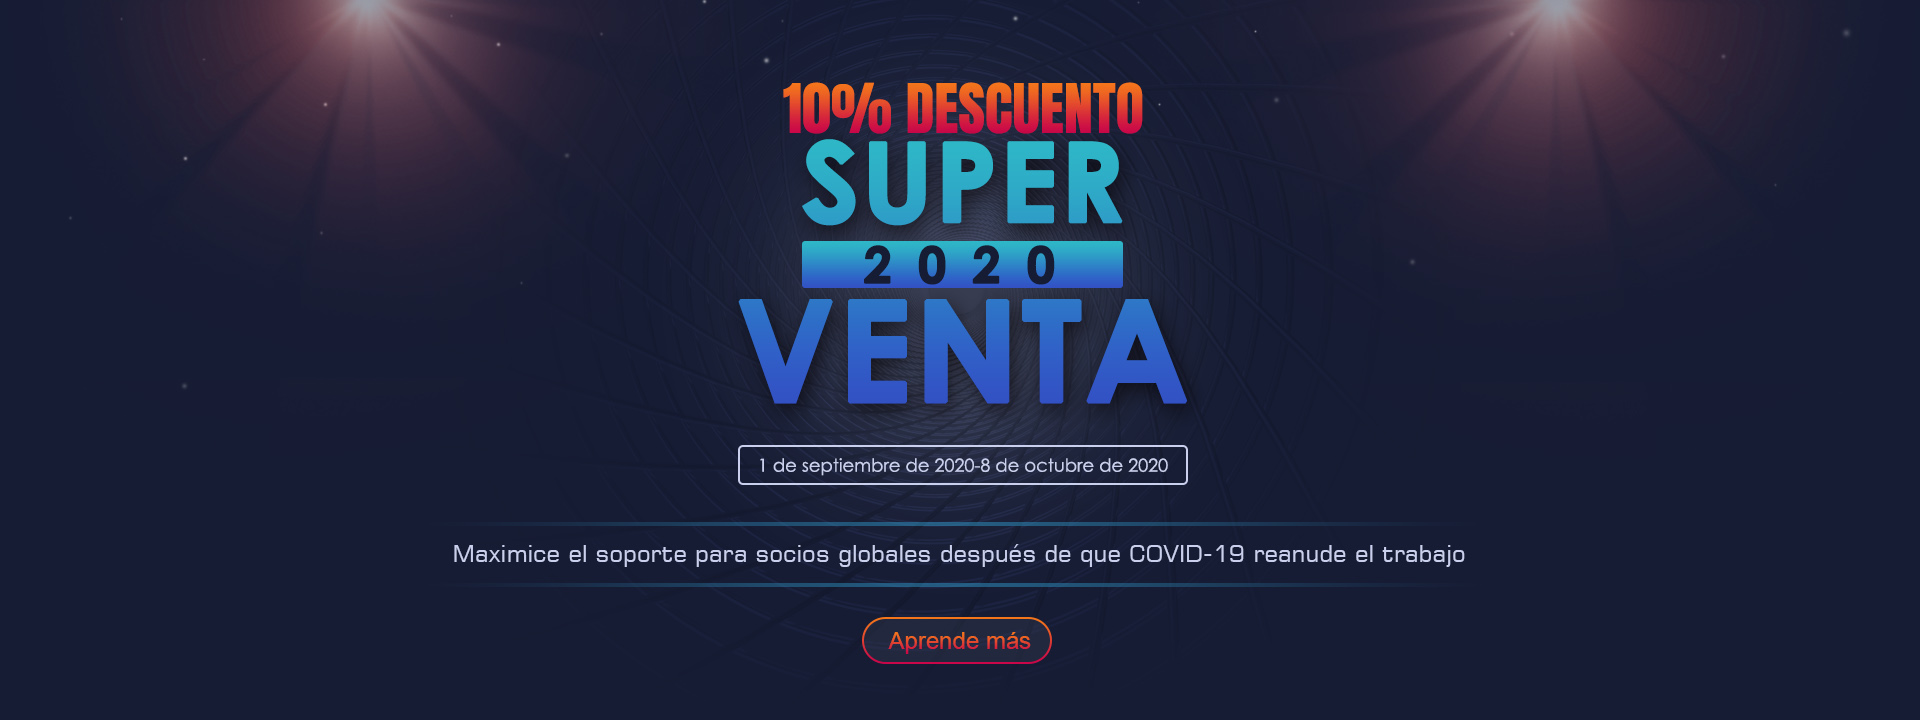 2020 Super Venta